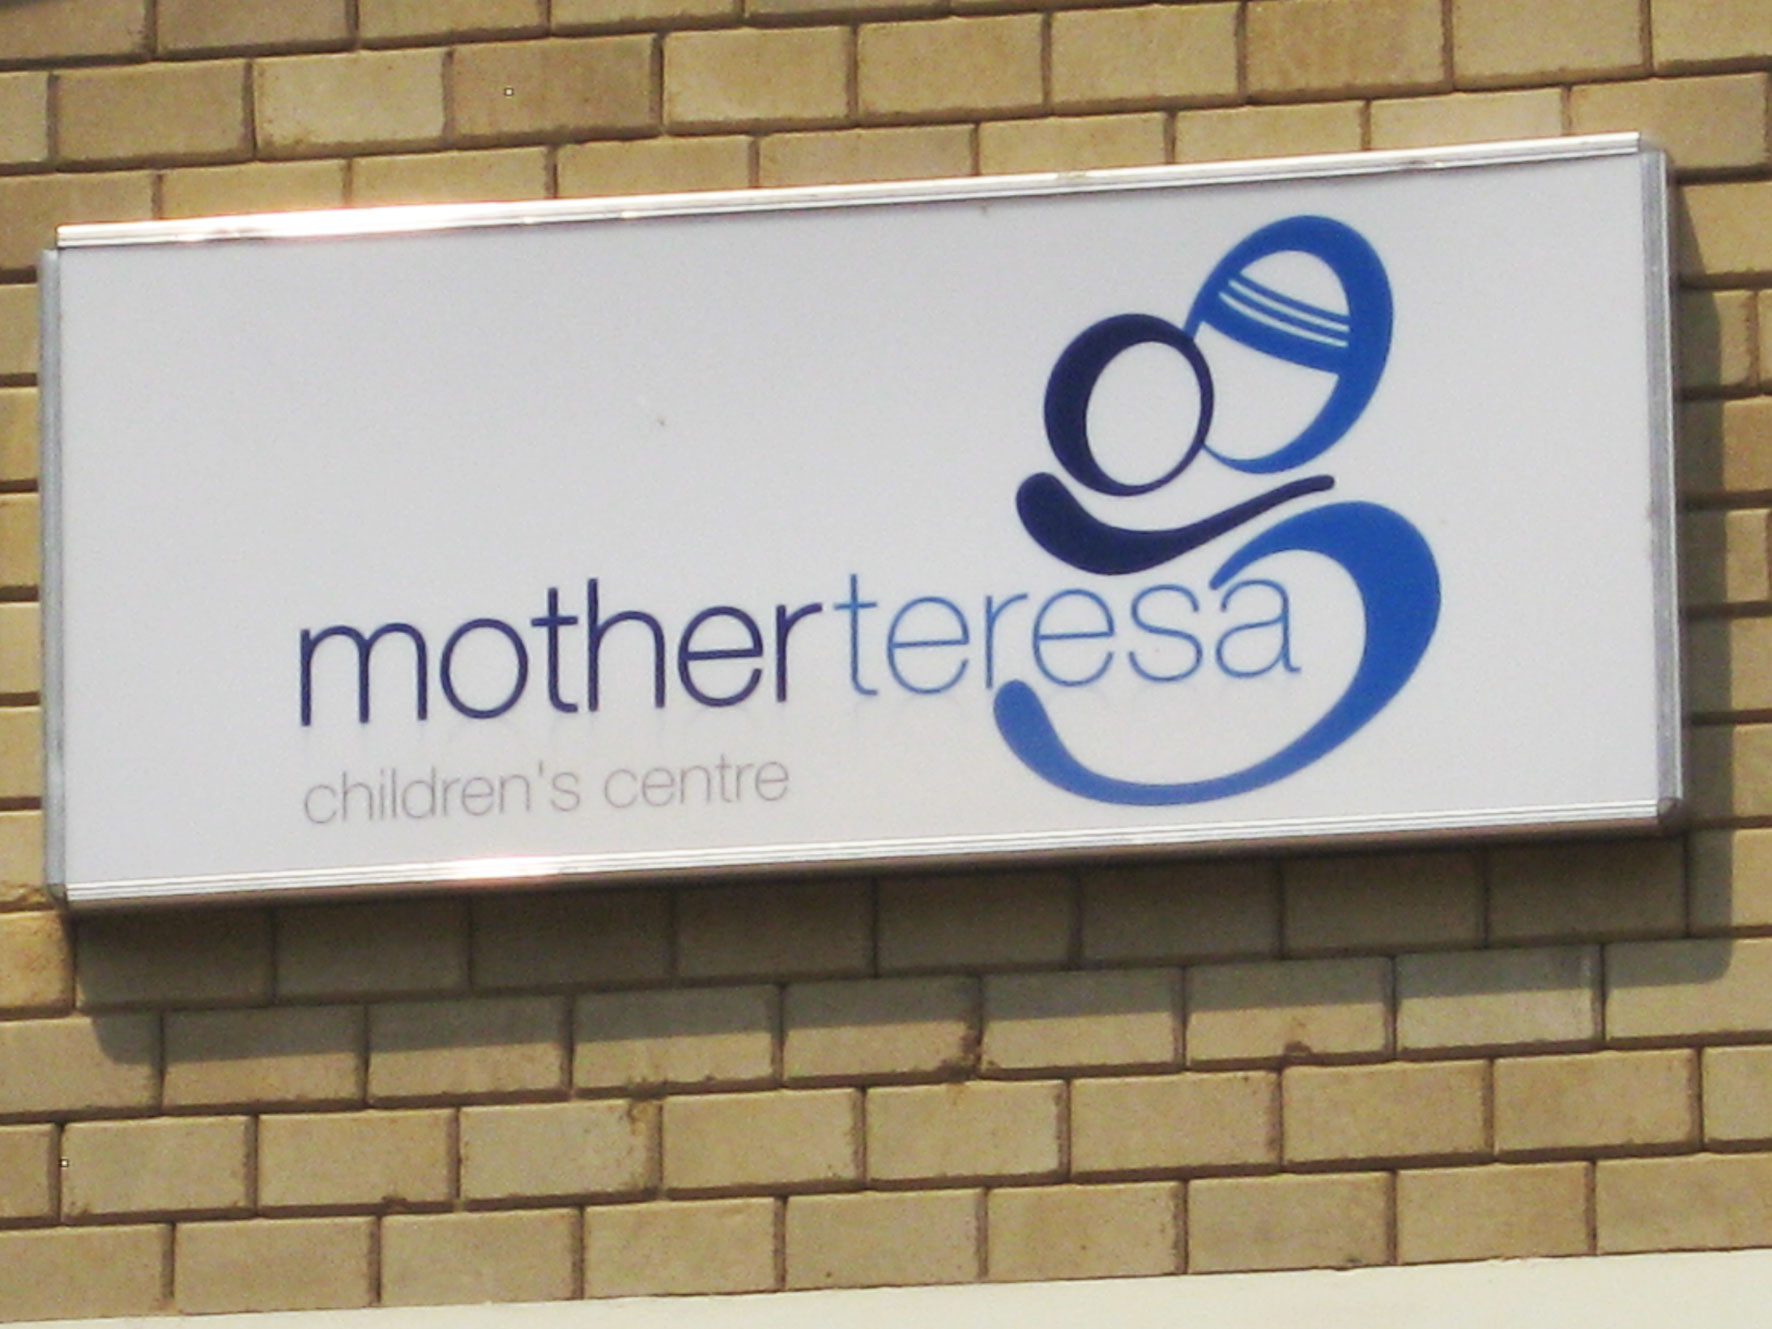 Mother Teresa Children's Centre, fully open in 2013